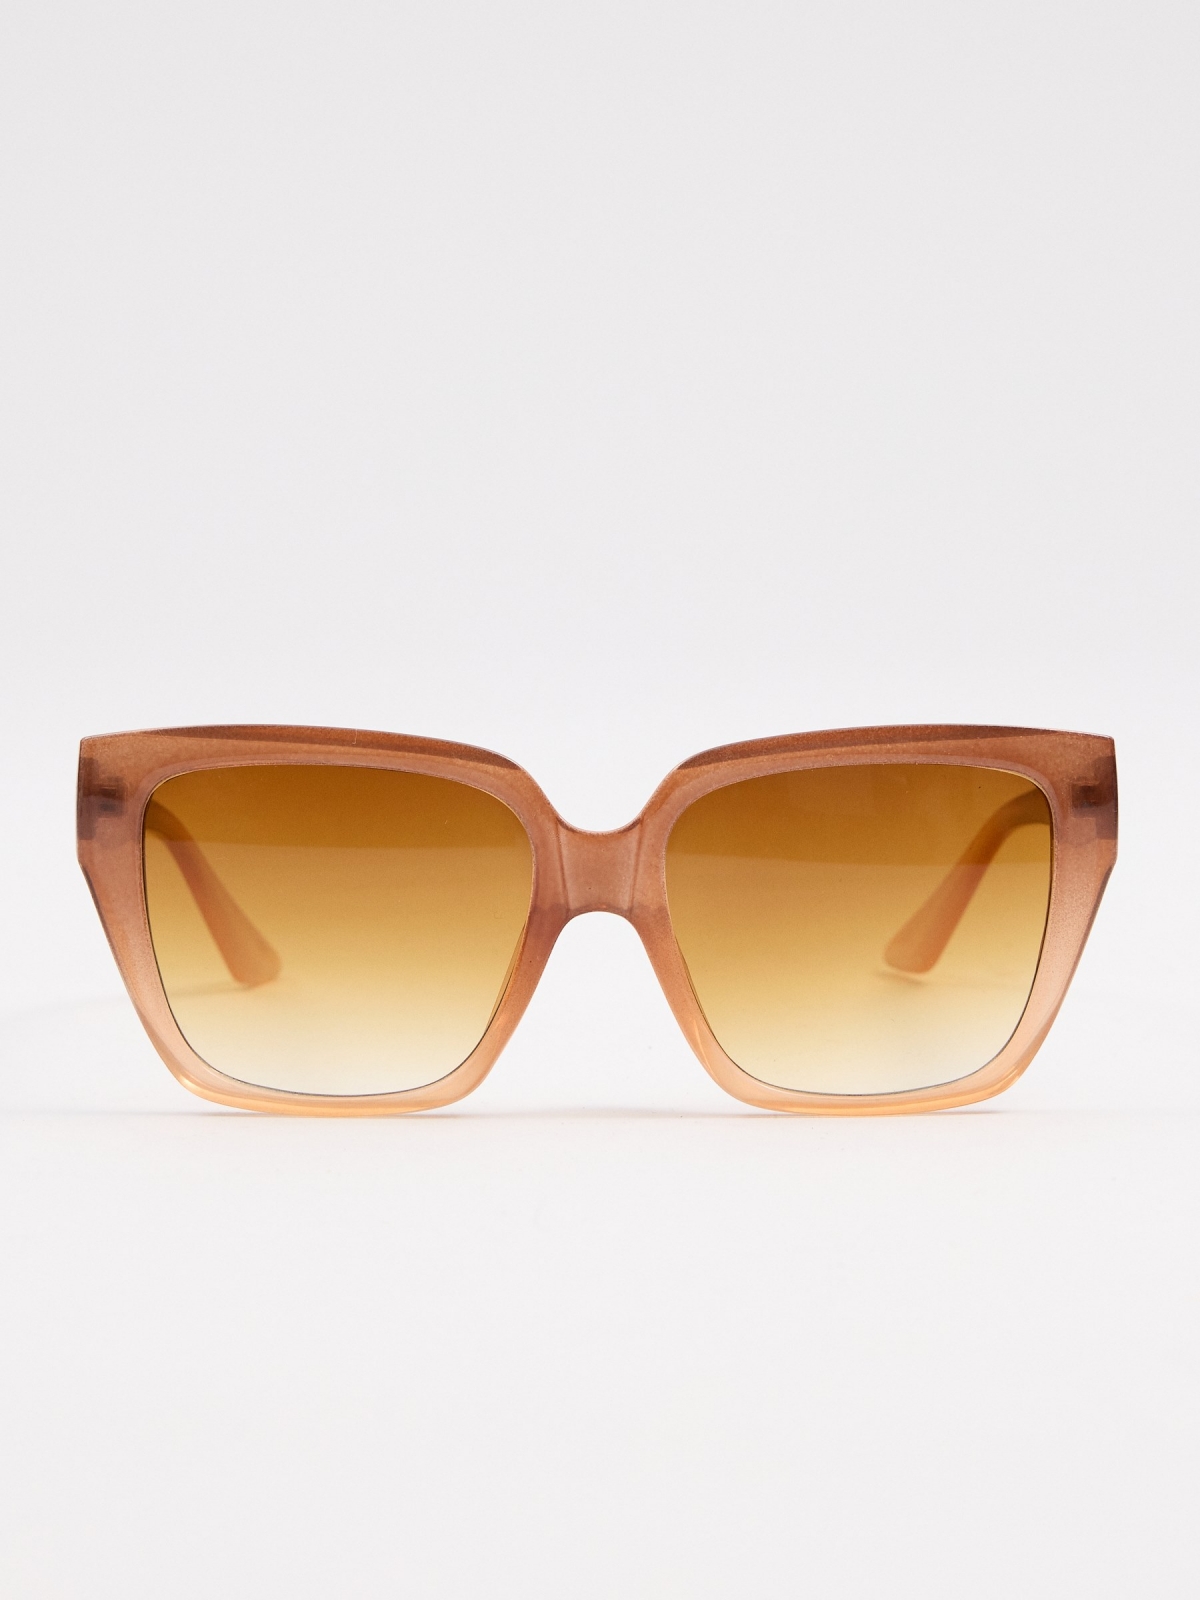 Square acetate sunglasses brown